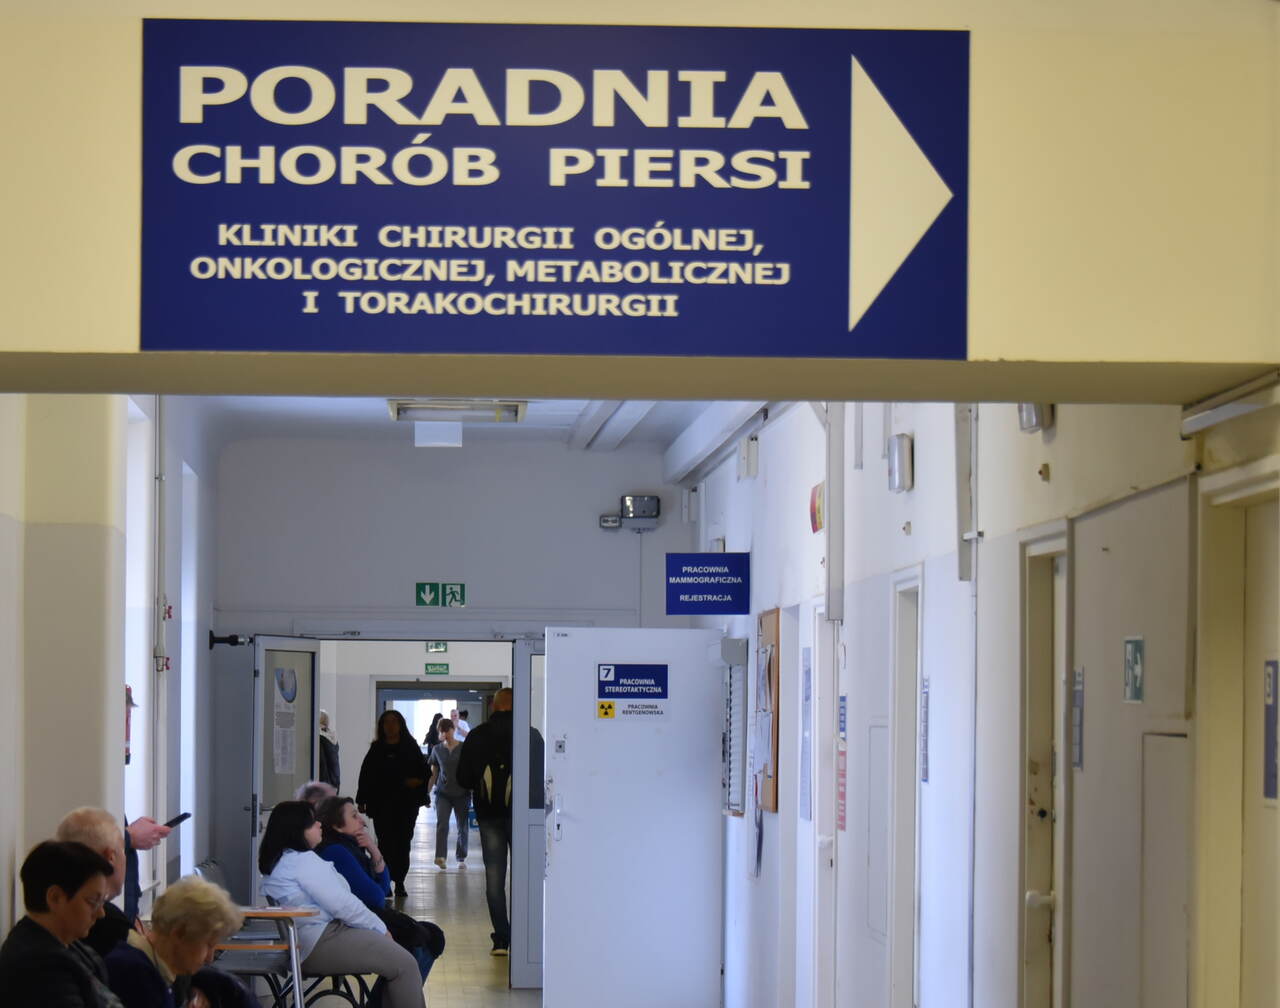 Poradnia Chorób Piersi Wojskowego Instytutu Medycznego w Warszawie, korytarz.